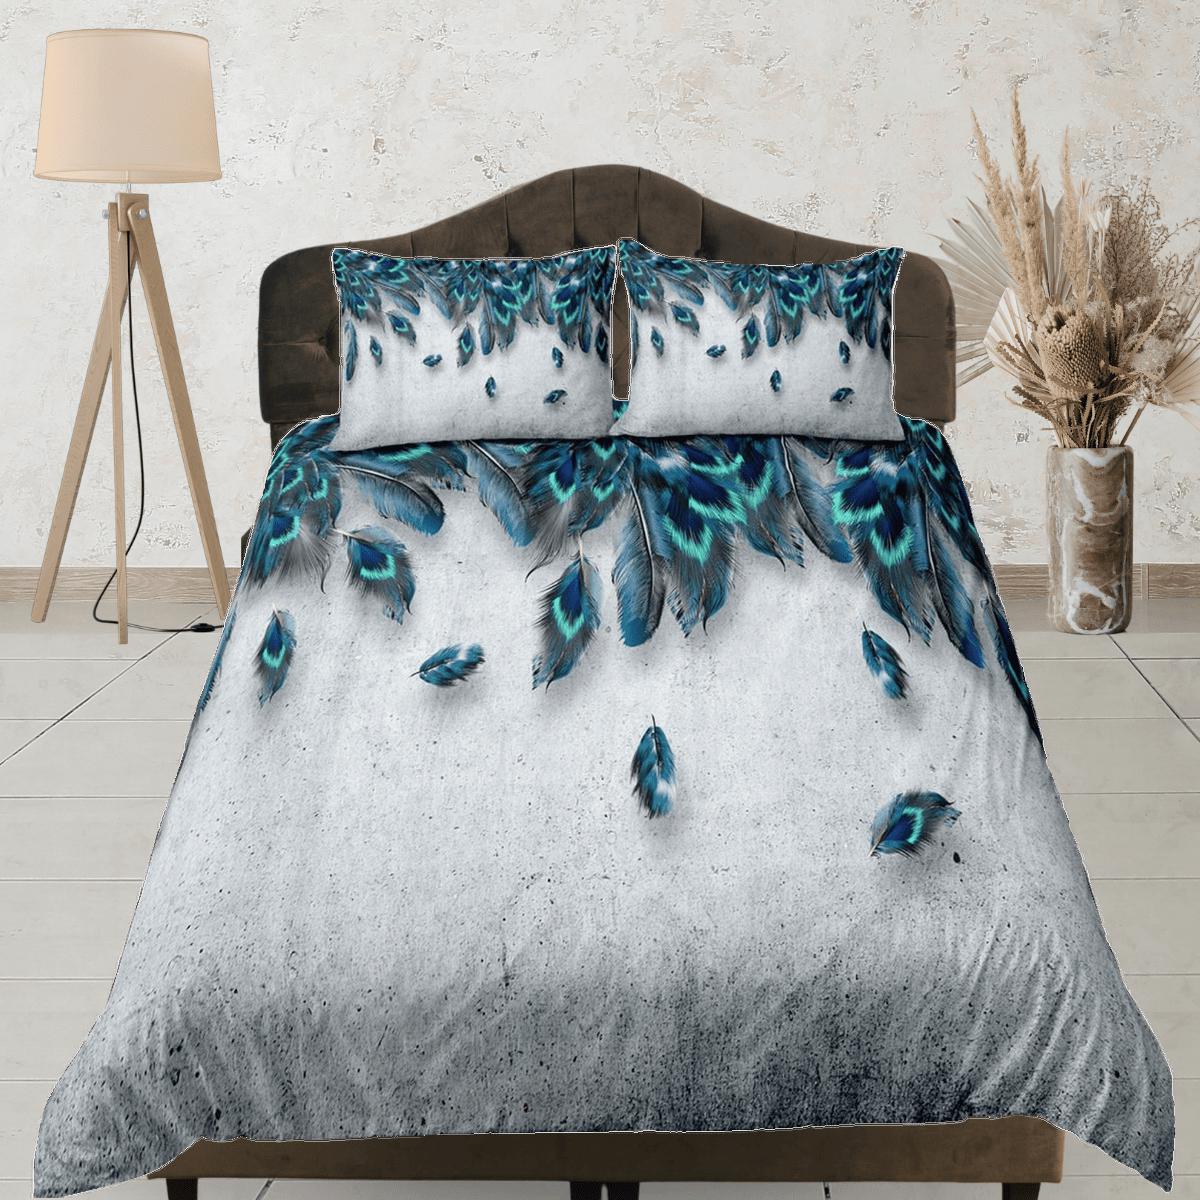 daintyduvet Grey duvet cover with peacock feather aesthetic bedding set full, luxury duvet queen, king, boho duvet, designer bedding, maximalist decor